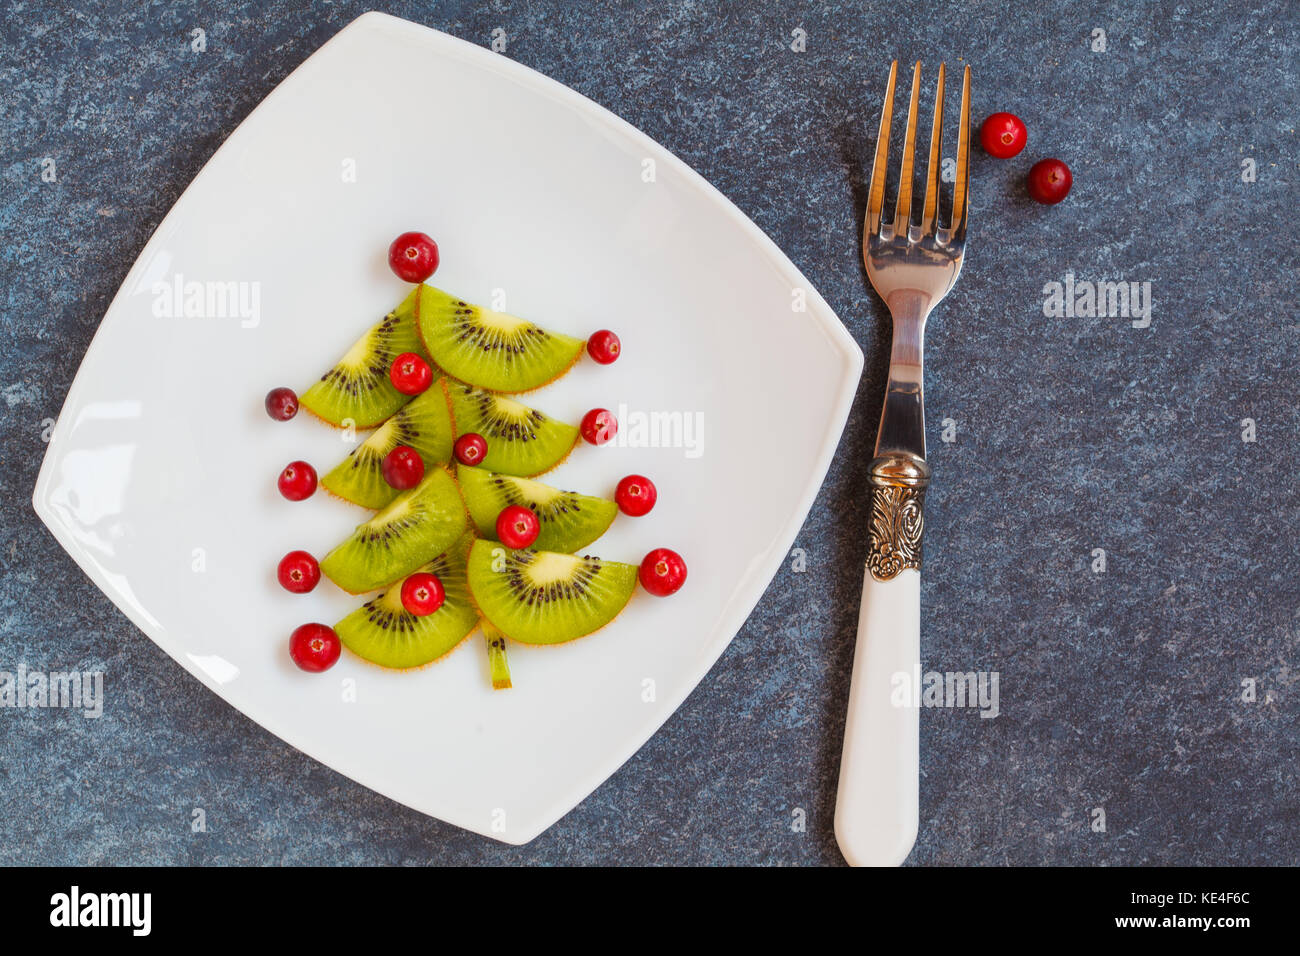 Dekoration Weihnachten Das Neue Jahr Von Kiwi Fichte Gesundes Essen Im Urlaub Stockfotografie Alamy